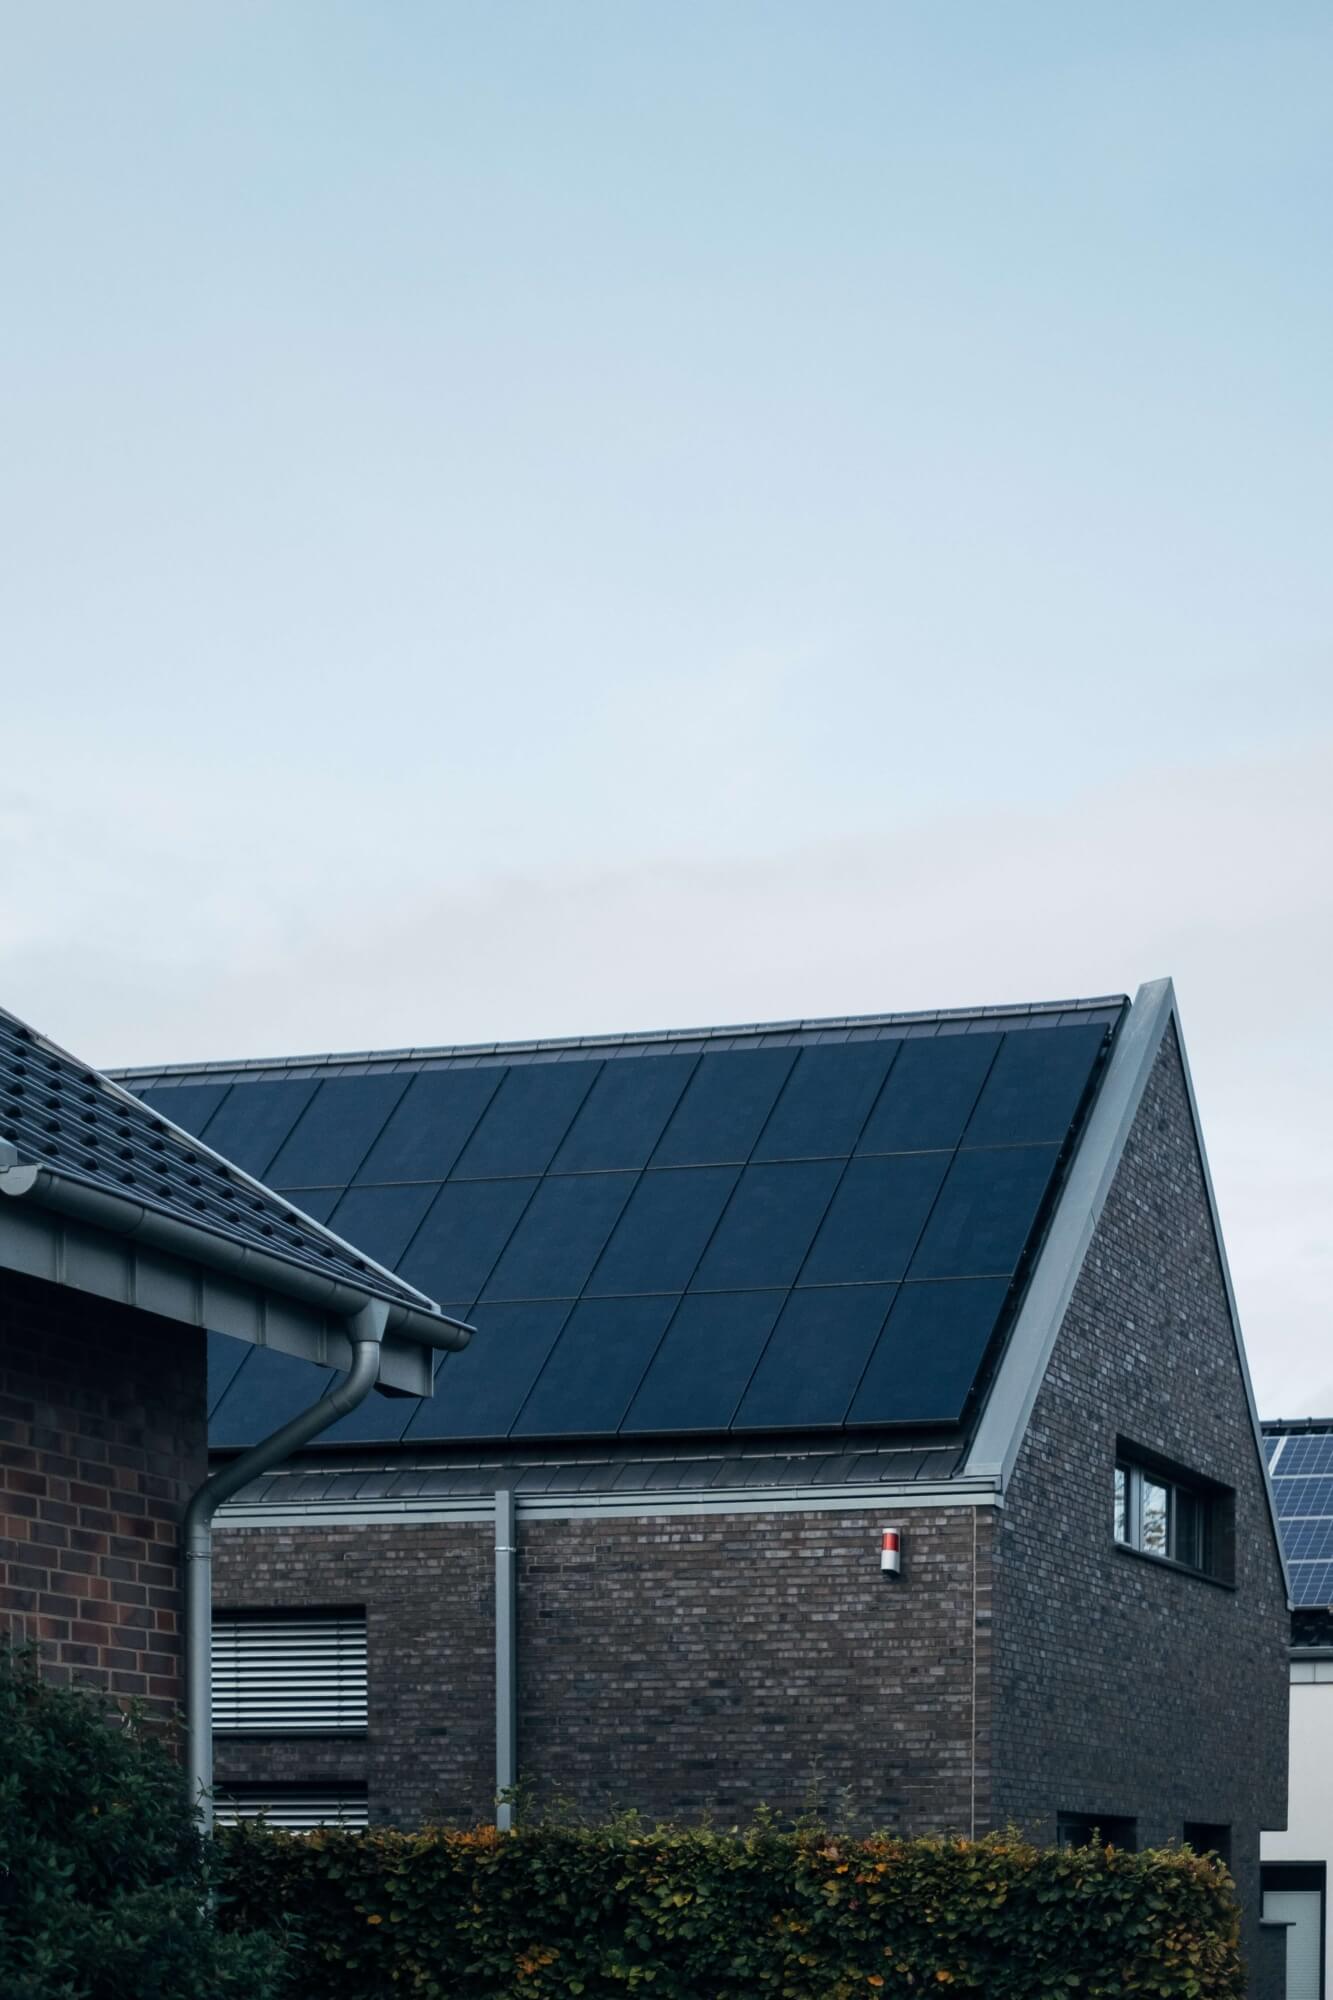 Investiční plán fotovoltaické elektrárny pro bytový dům